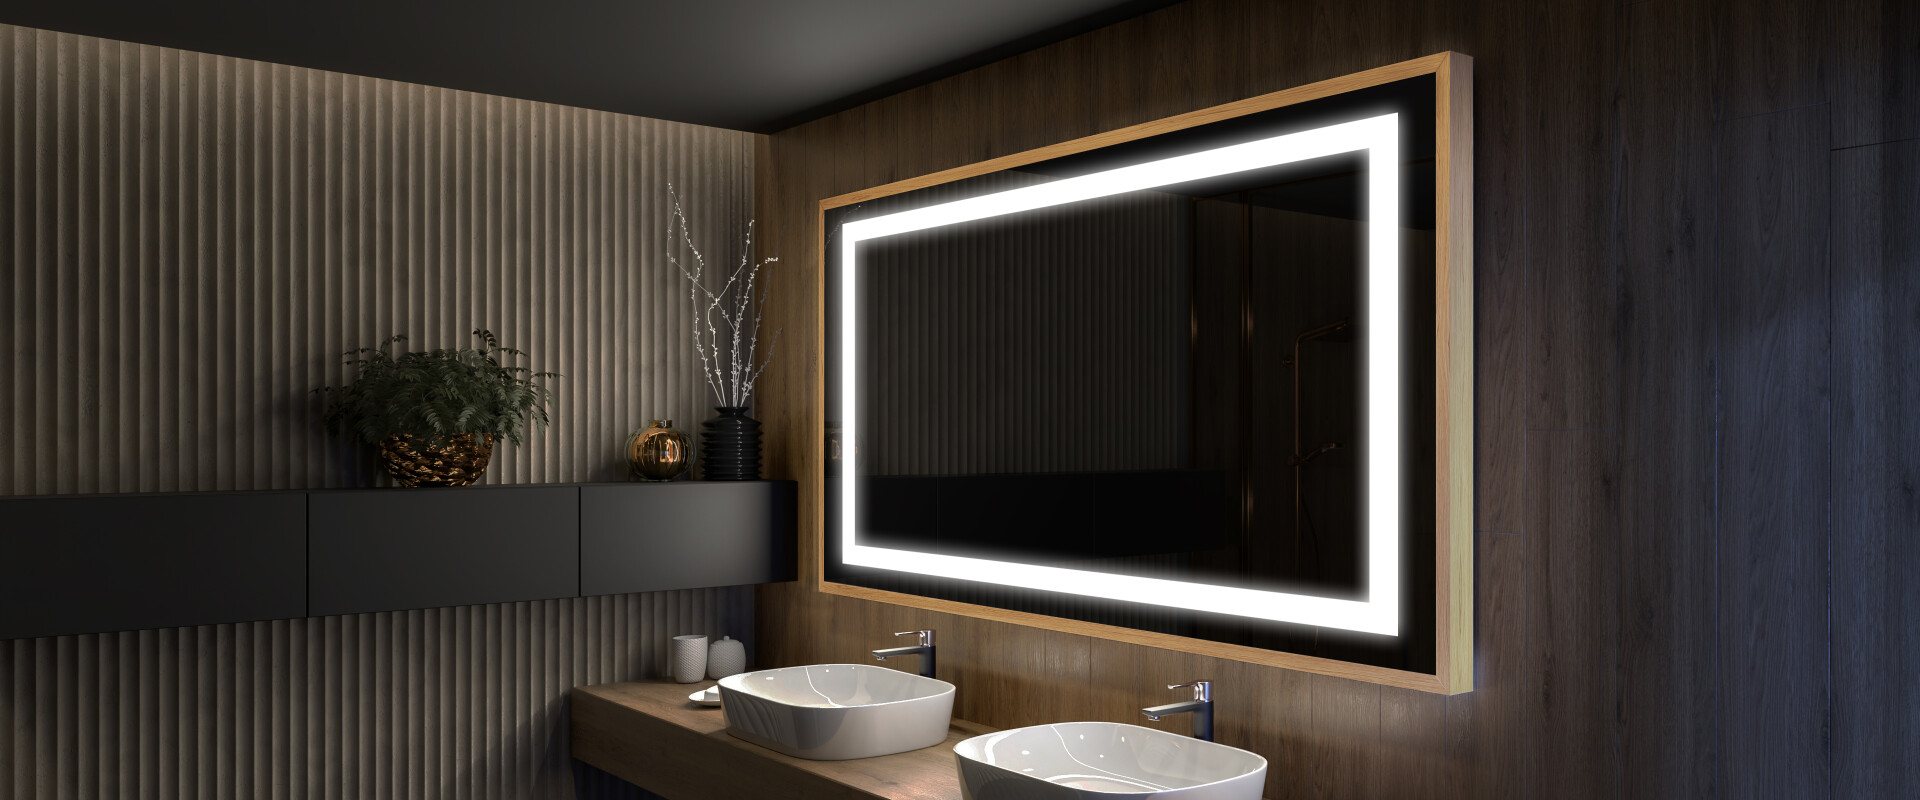 Miroir salle de bain - sur mesure - avec éclairage intégré